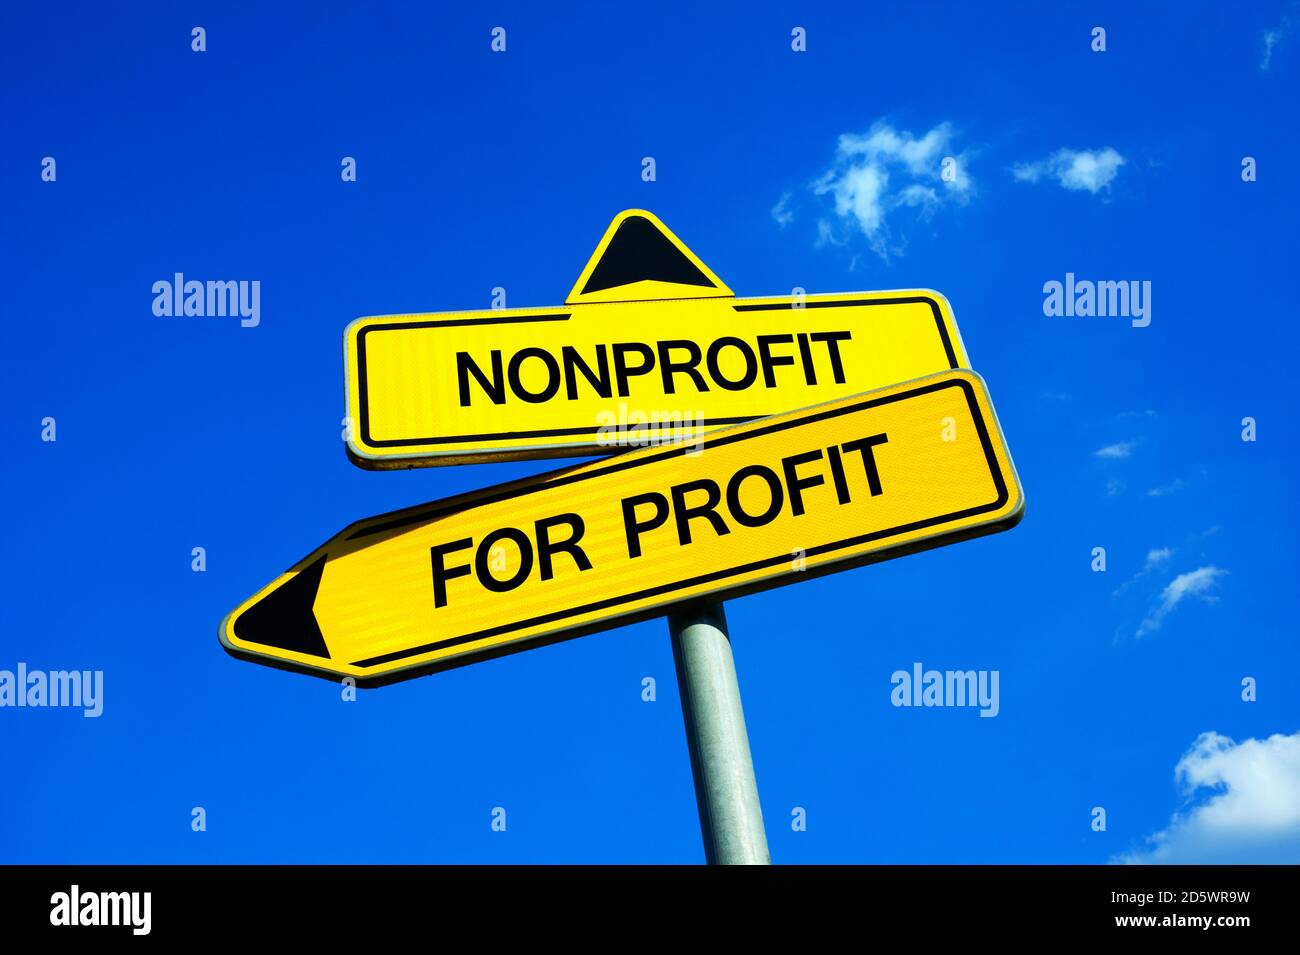 Nonprofit vs per il profitto - segnale di traffico con due opzioni - organizzazione non redditizia sovvenzionata senza reddito contro imprenditorialità e. basato su business o Foto Stock